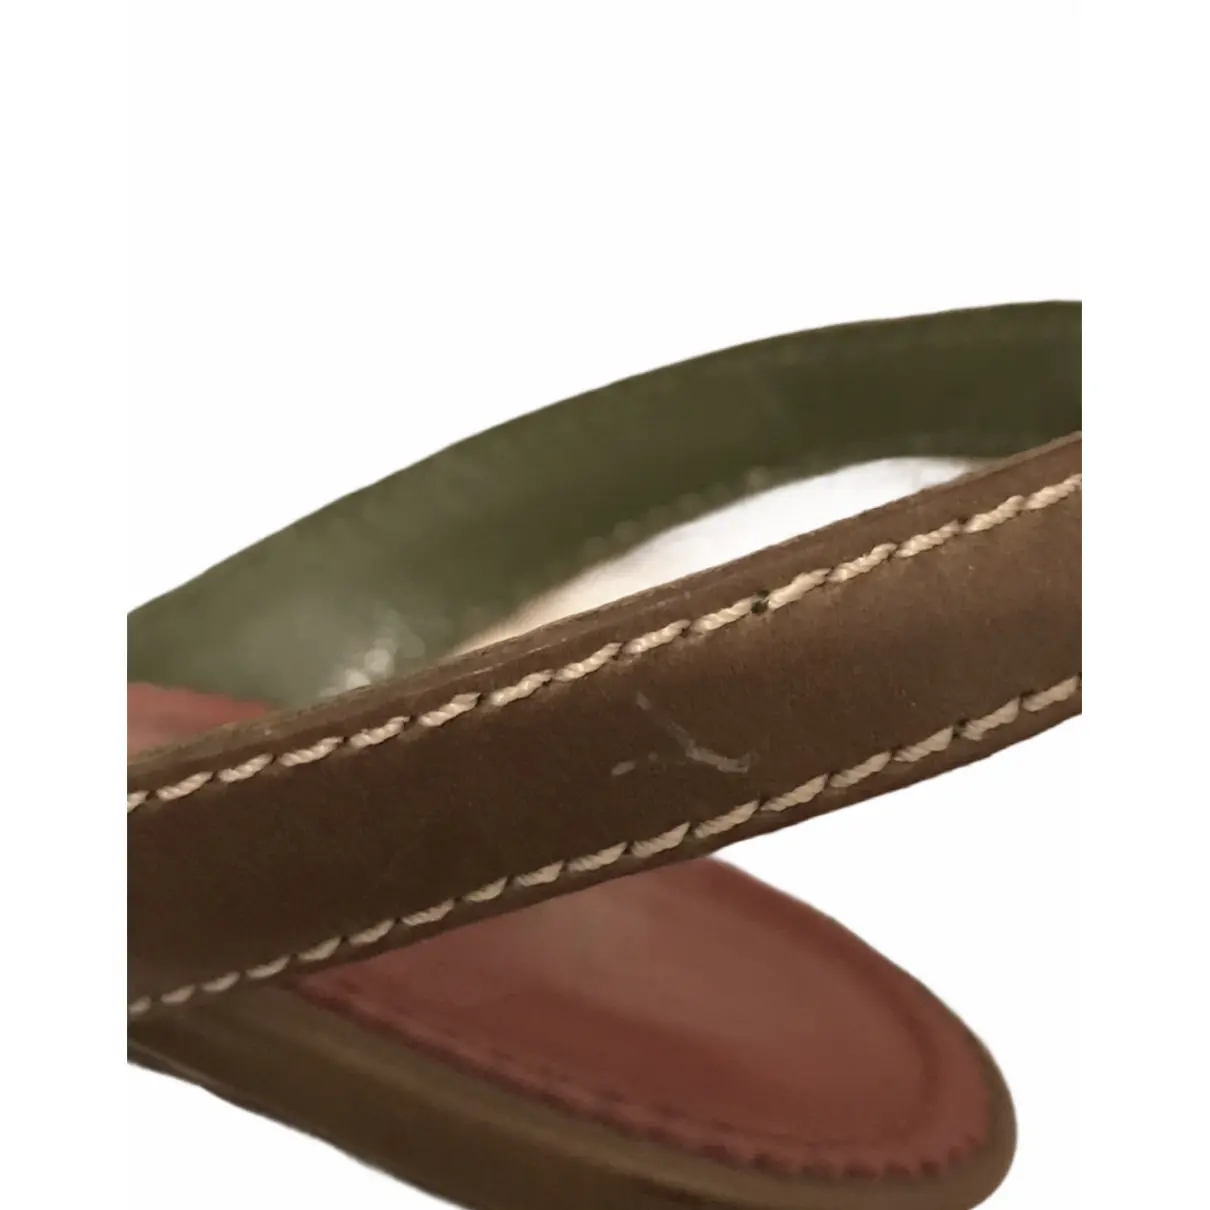 Leather sandals Yves Saint Laurent - Vintage